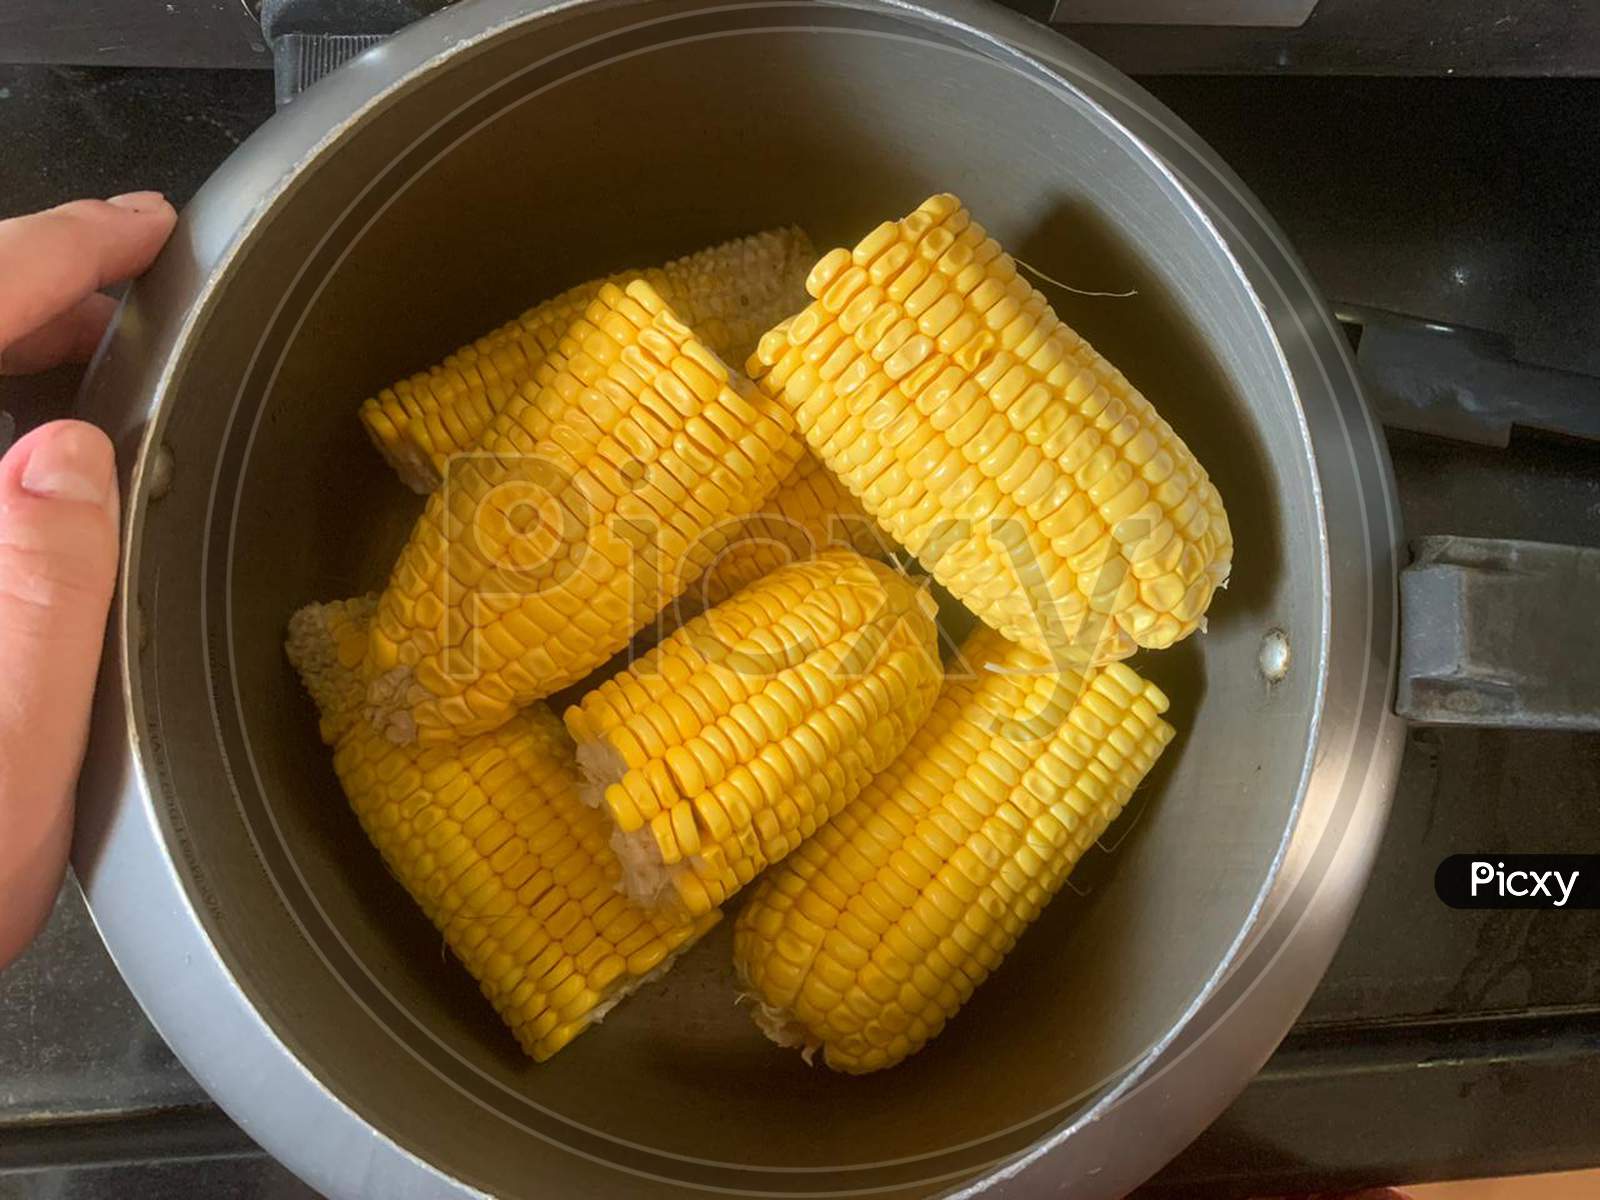 Corn in a pressure cooker